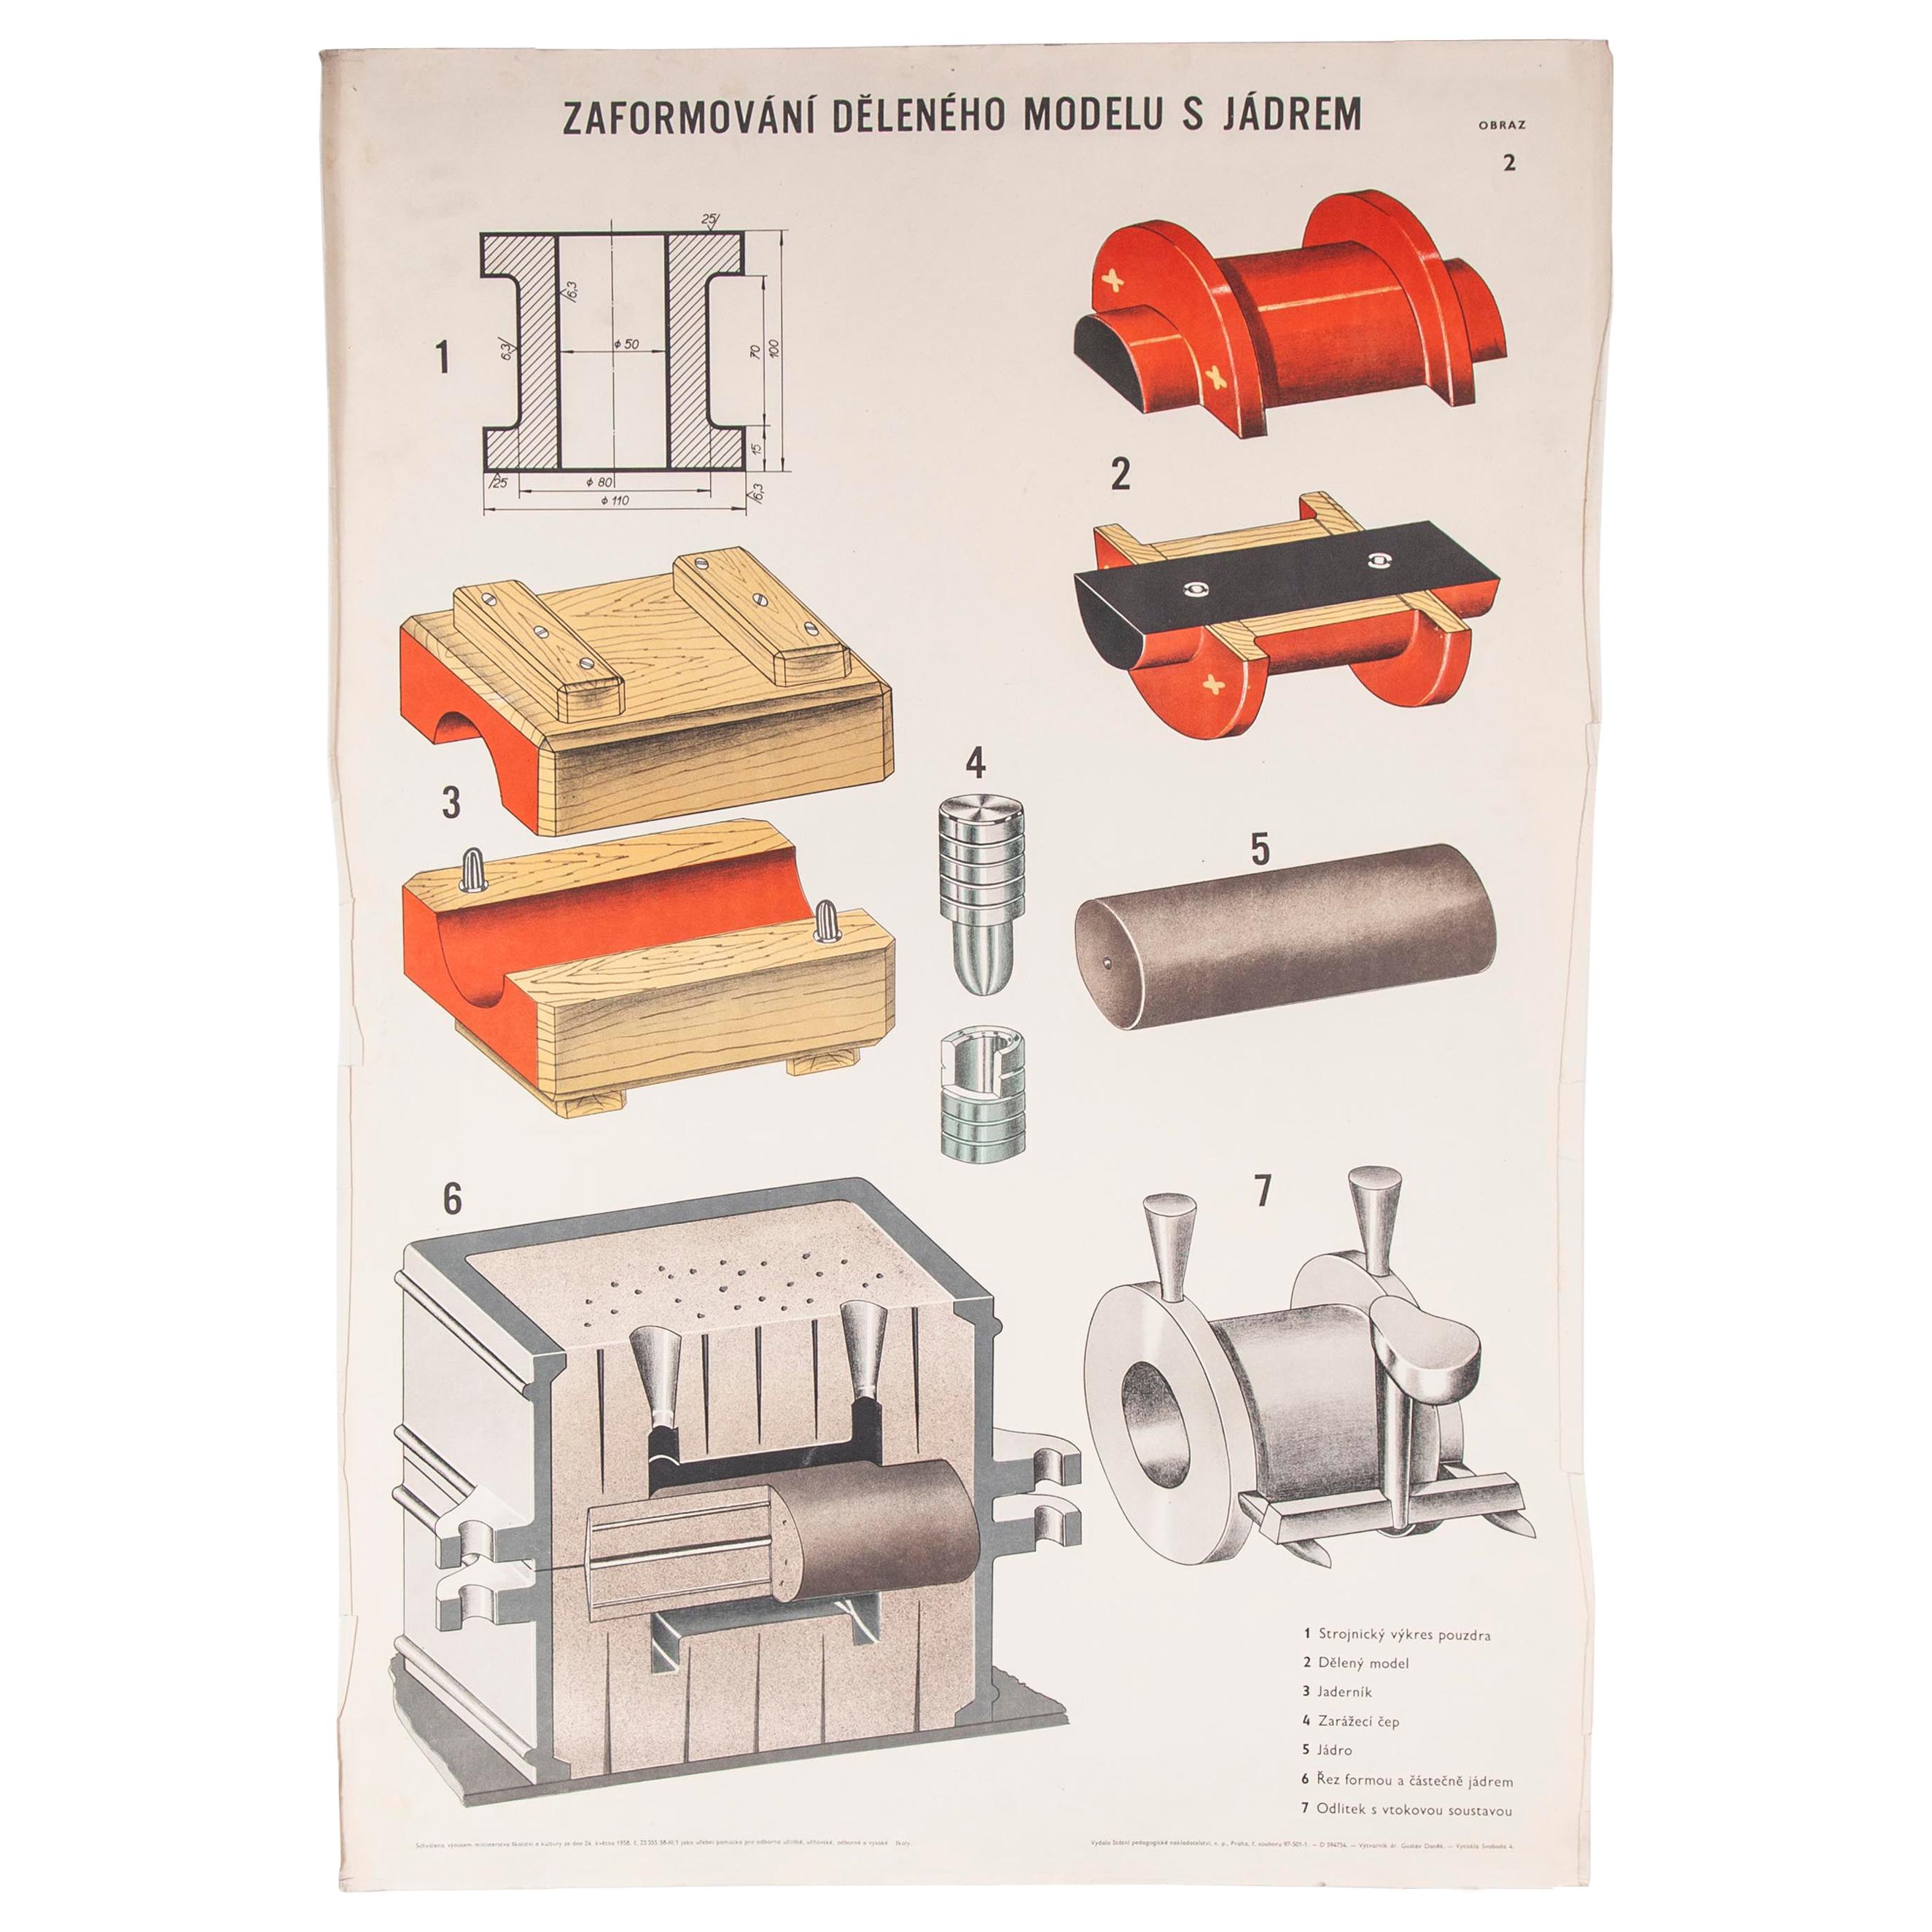 Dessin industriel technique tchèque:: poster sur l'ingénierie des moules de fonderie:: 7